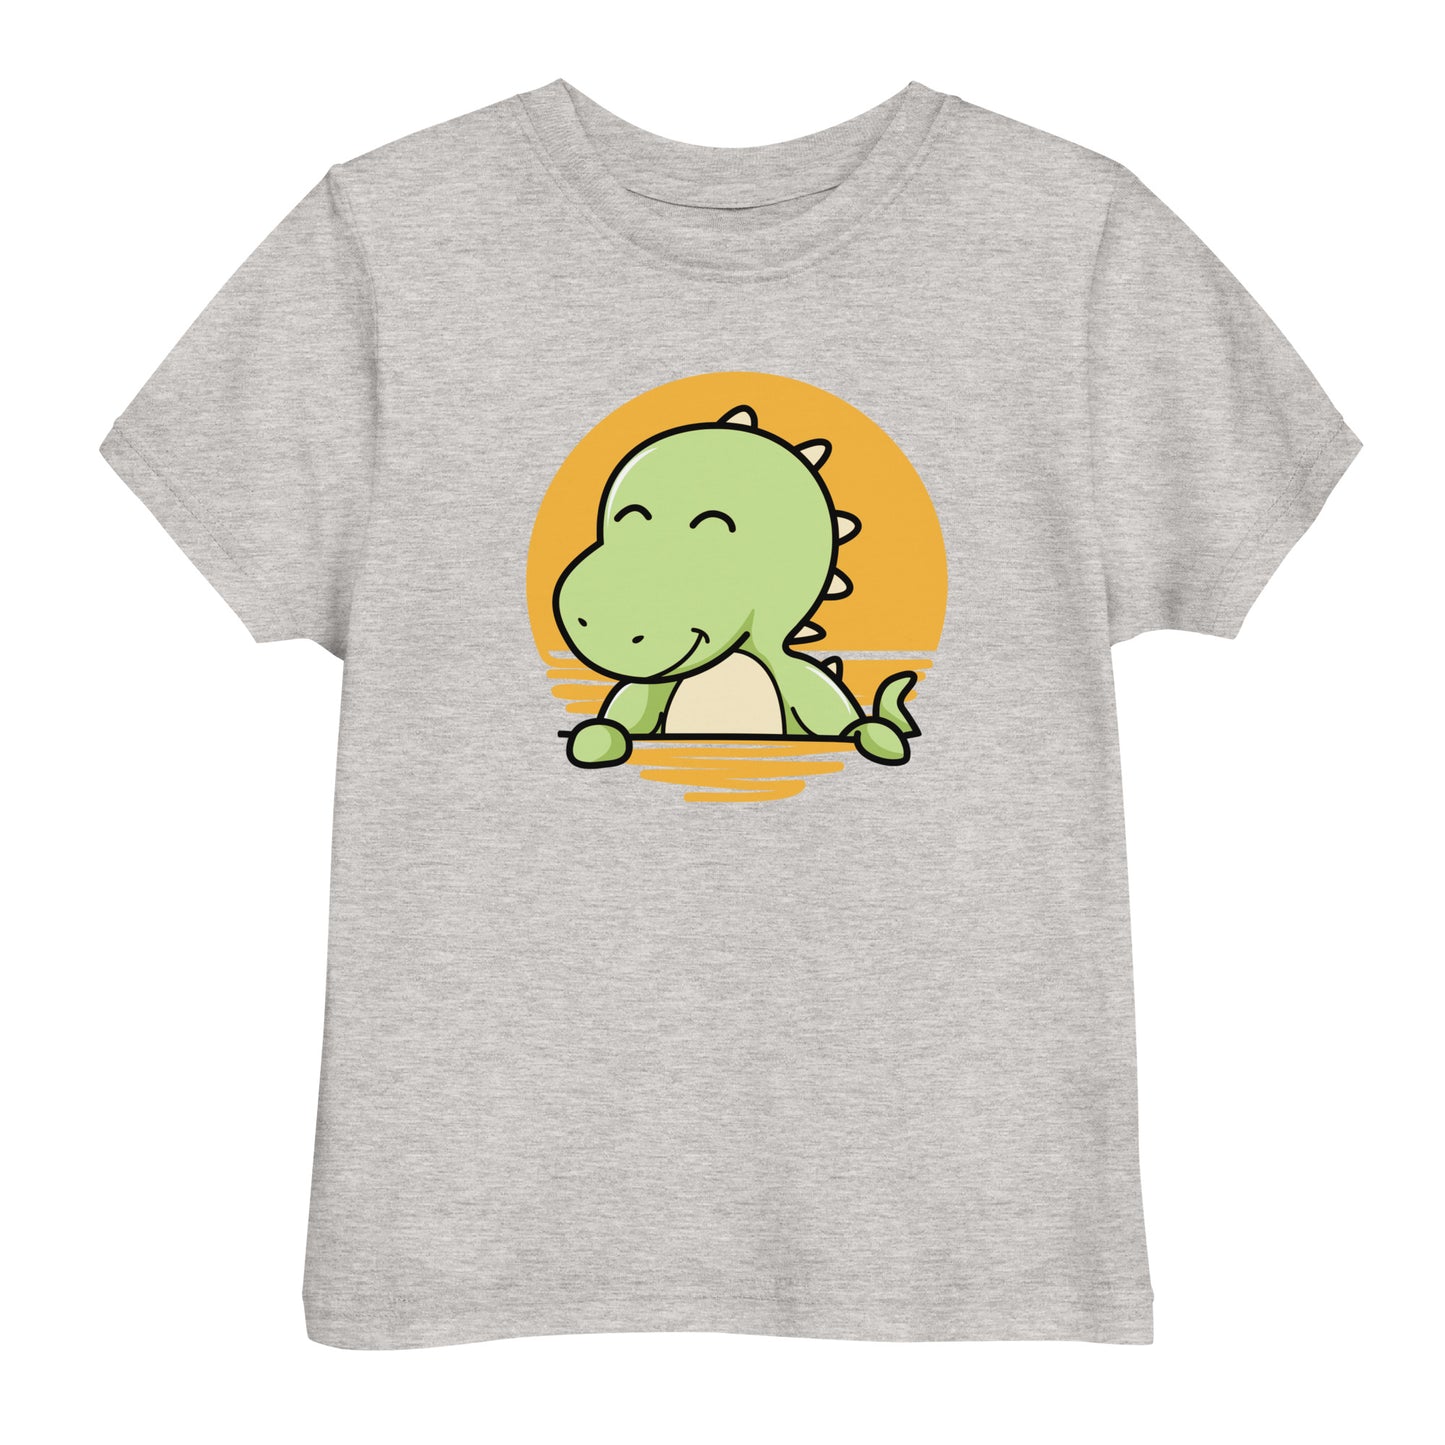 Kiddy Dinosaur | Toddler T-Shirt | 2Y-5Y | Grey